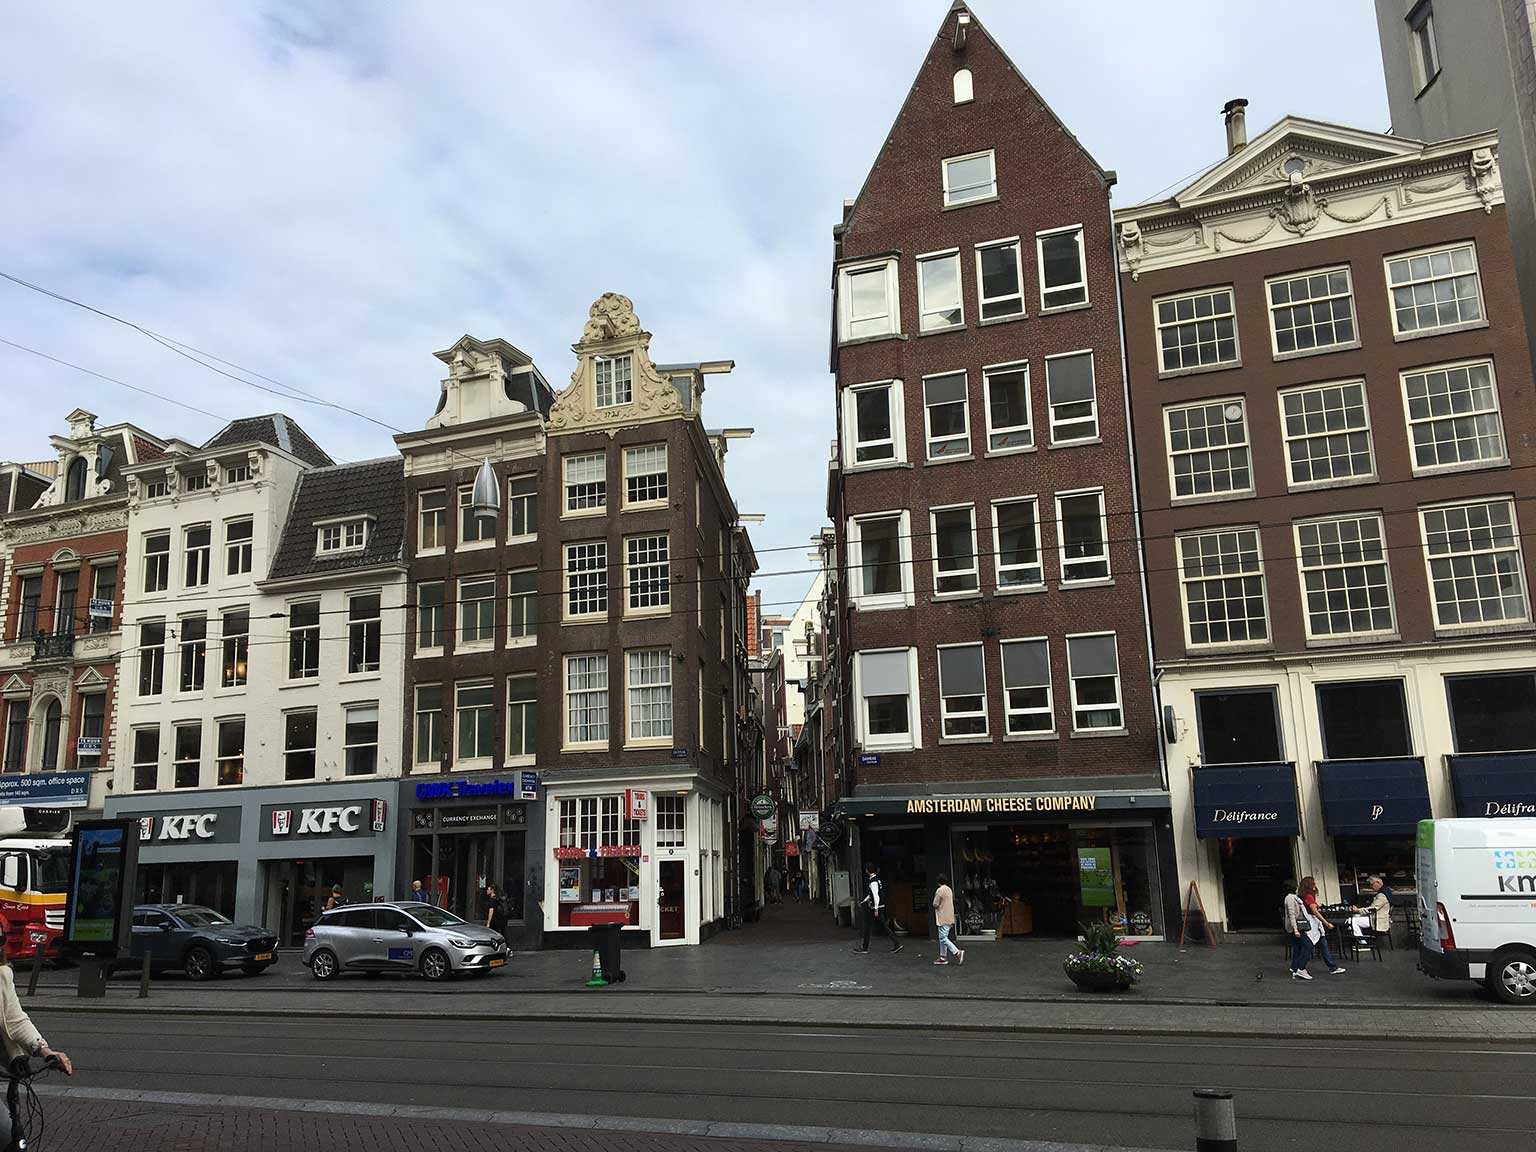 Zoutsteeg, Amsterdam, between Damrak and Nieuwendijk